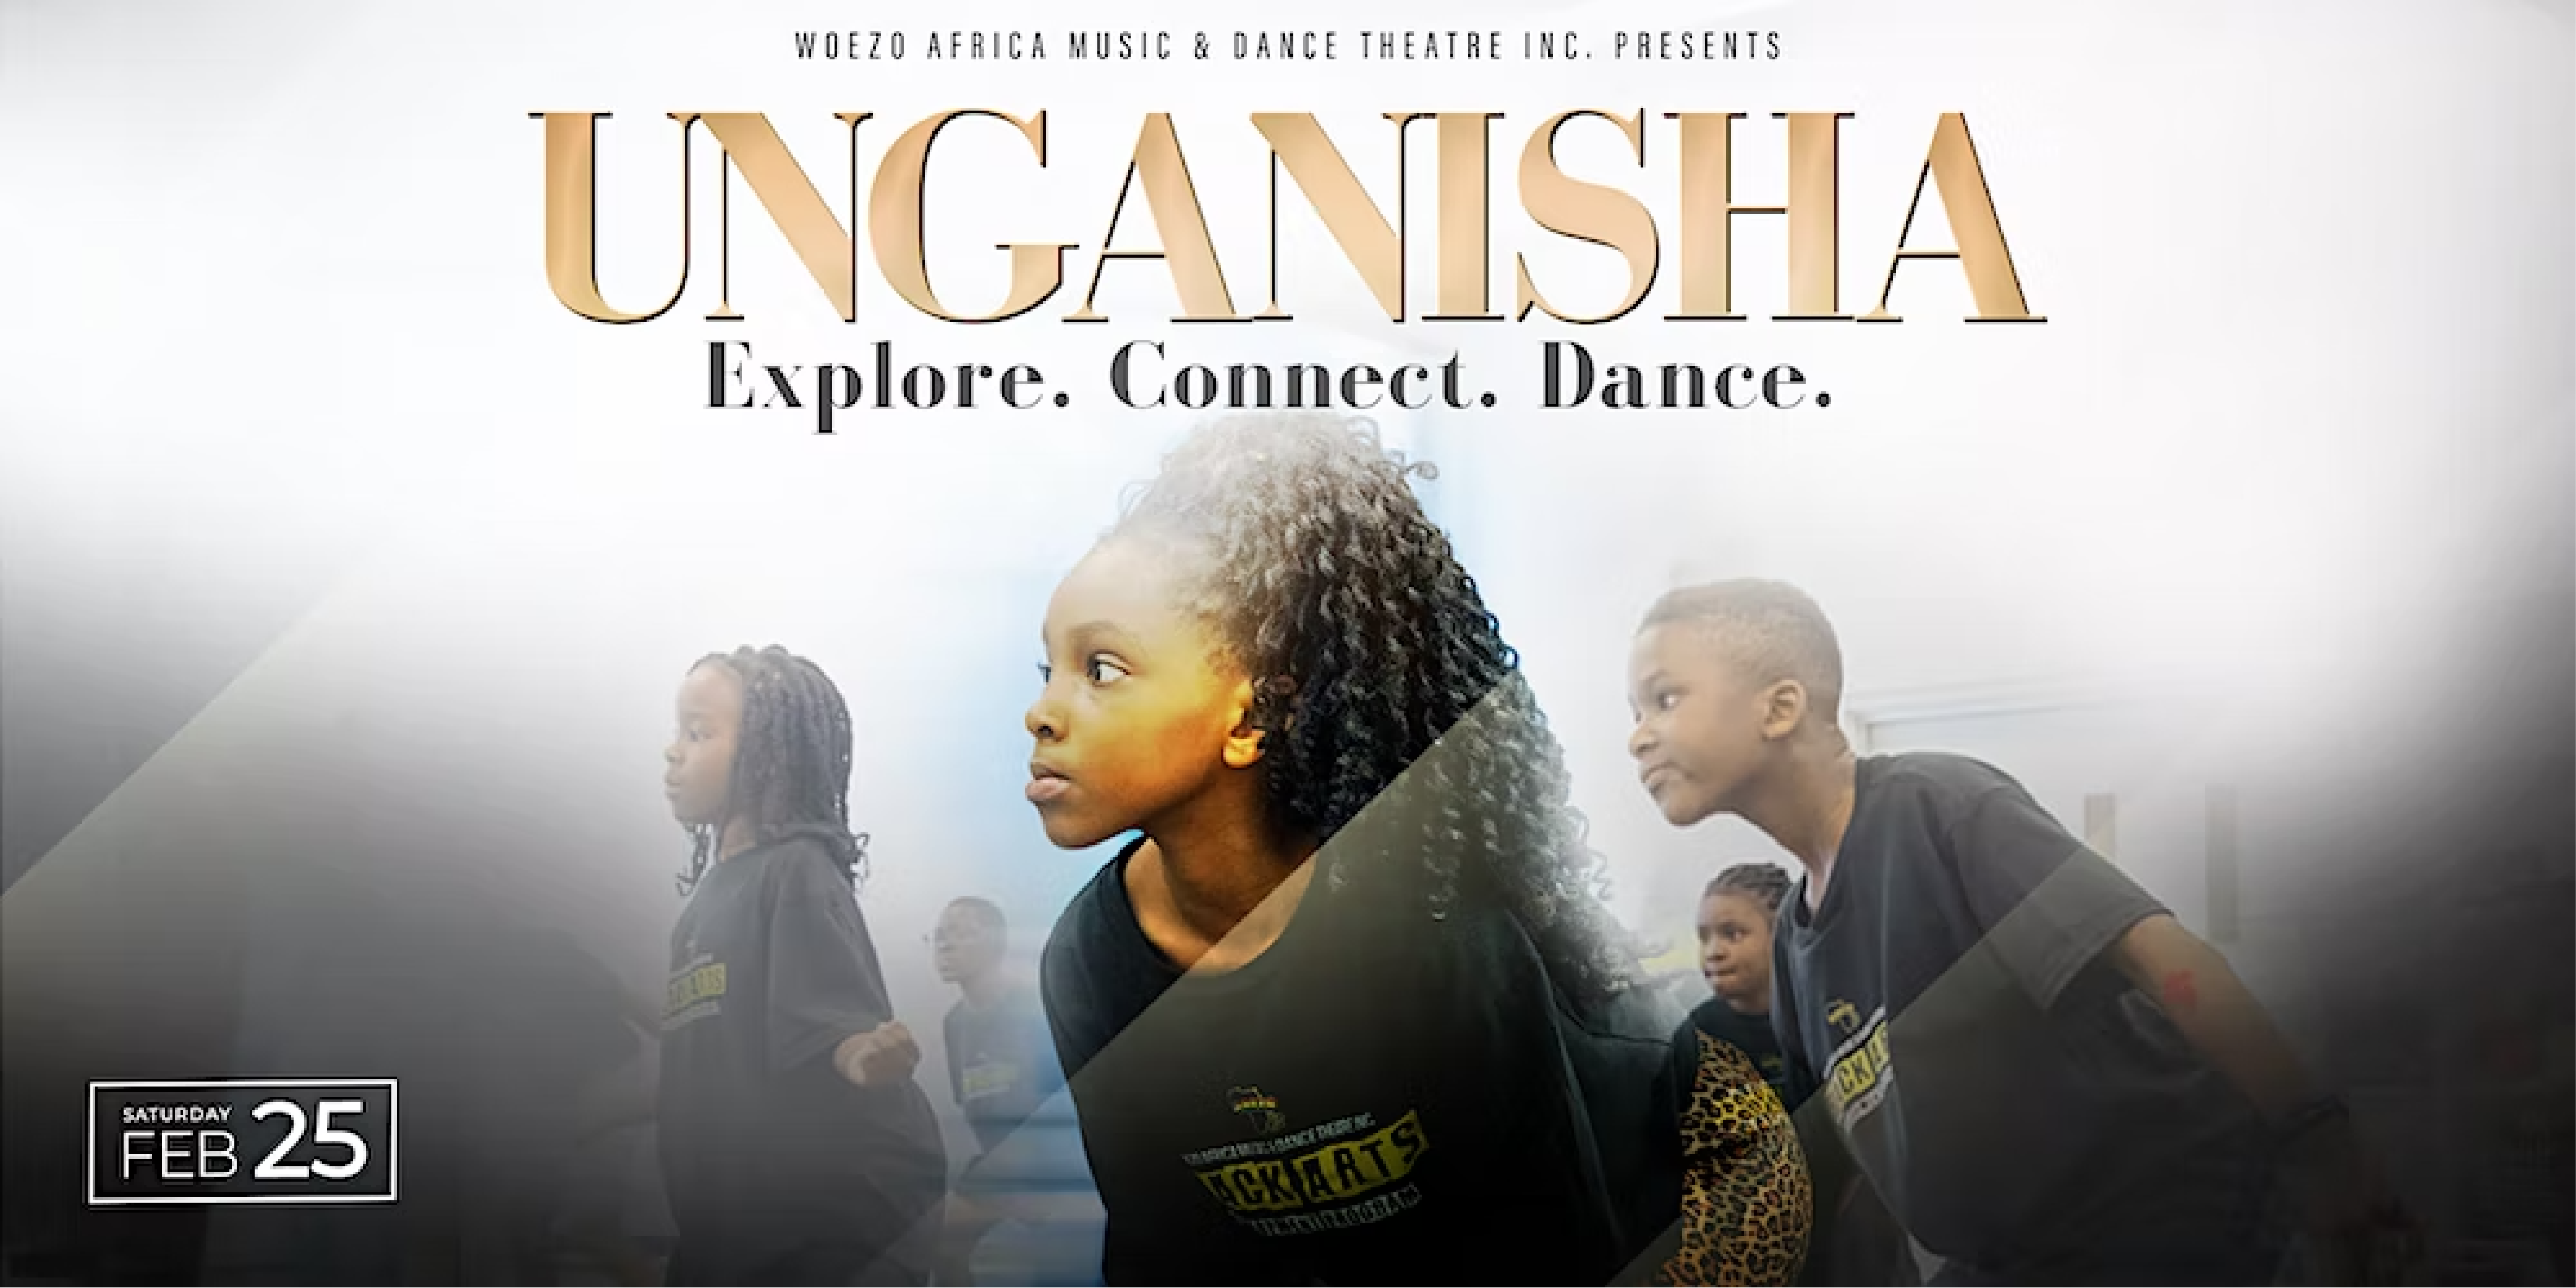 UNGANISHA EXPLORE. CONNECT. DANCE